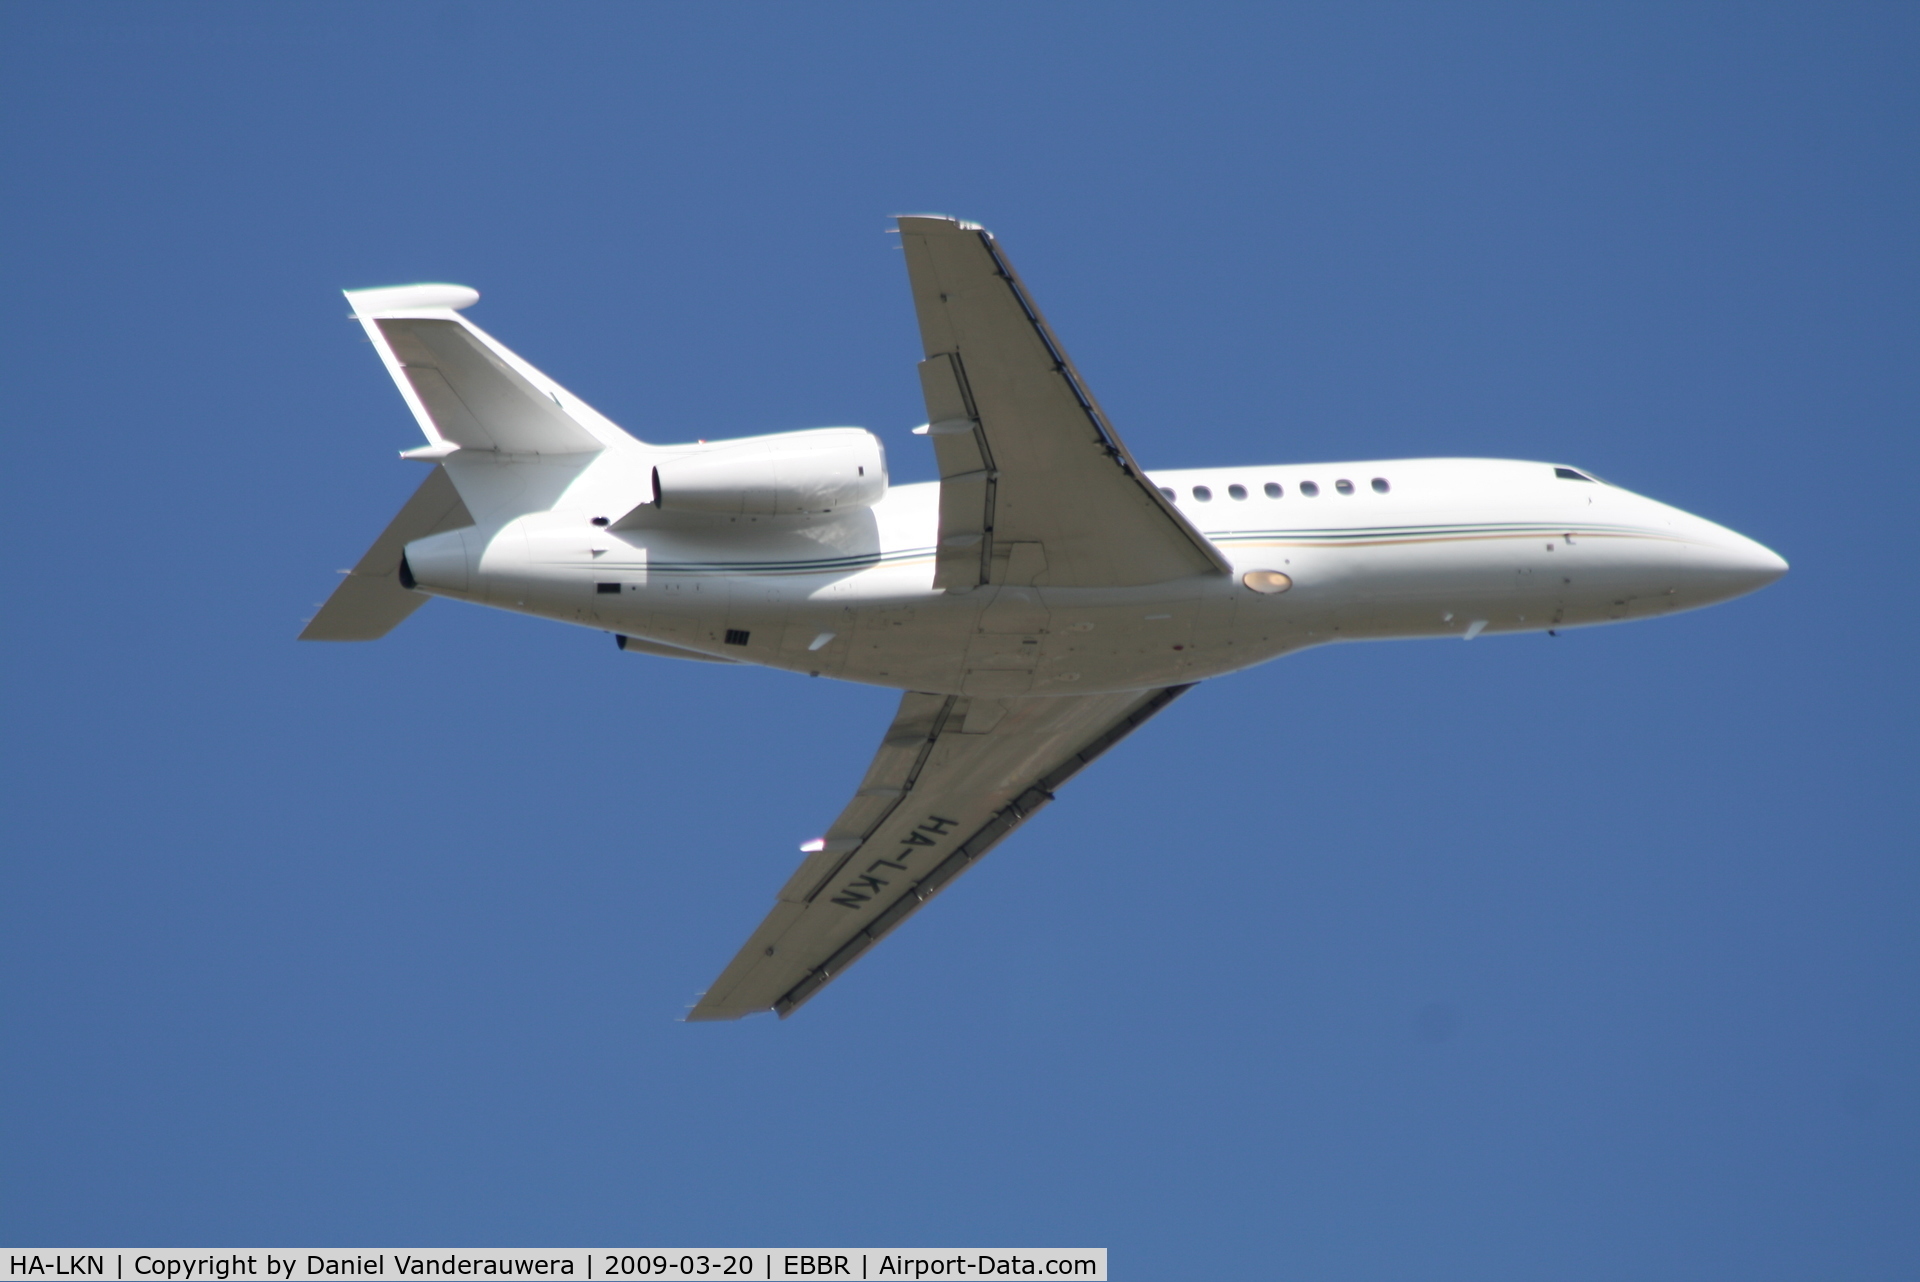 HA-LKN, 2005 Dassault Falcon 900EX C/N 143, Taking off from RWY 07R